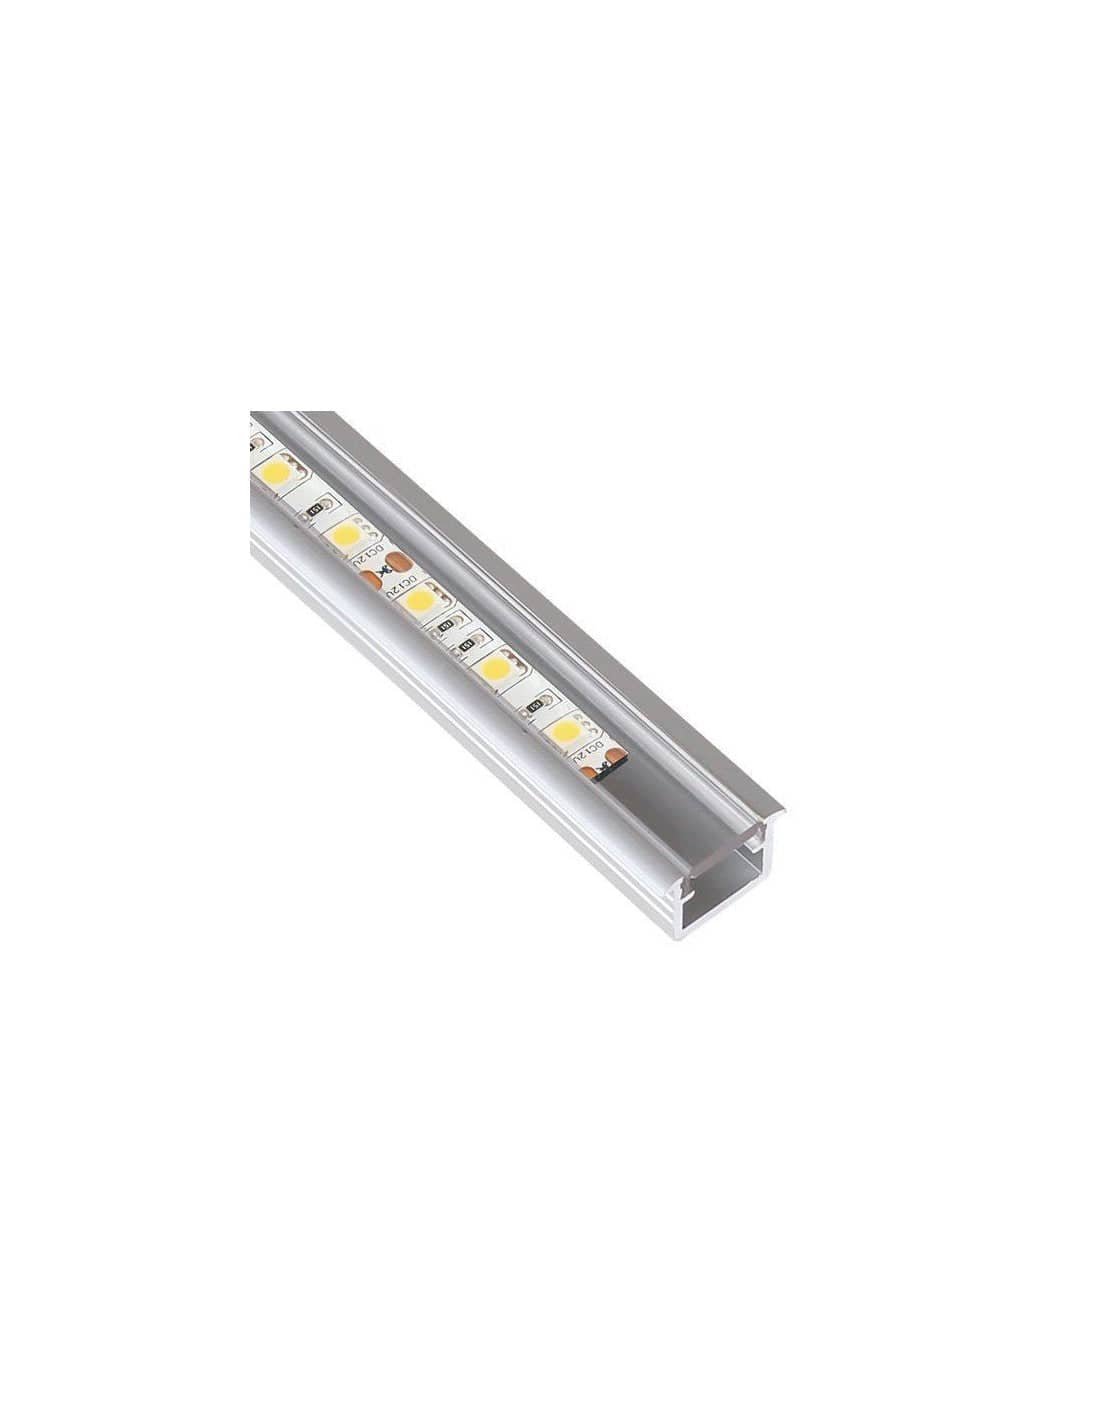 LED Profile INLINE 1m Aluminium/Transparent   PROF-INLINE-TR-1M-W